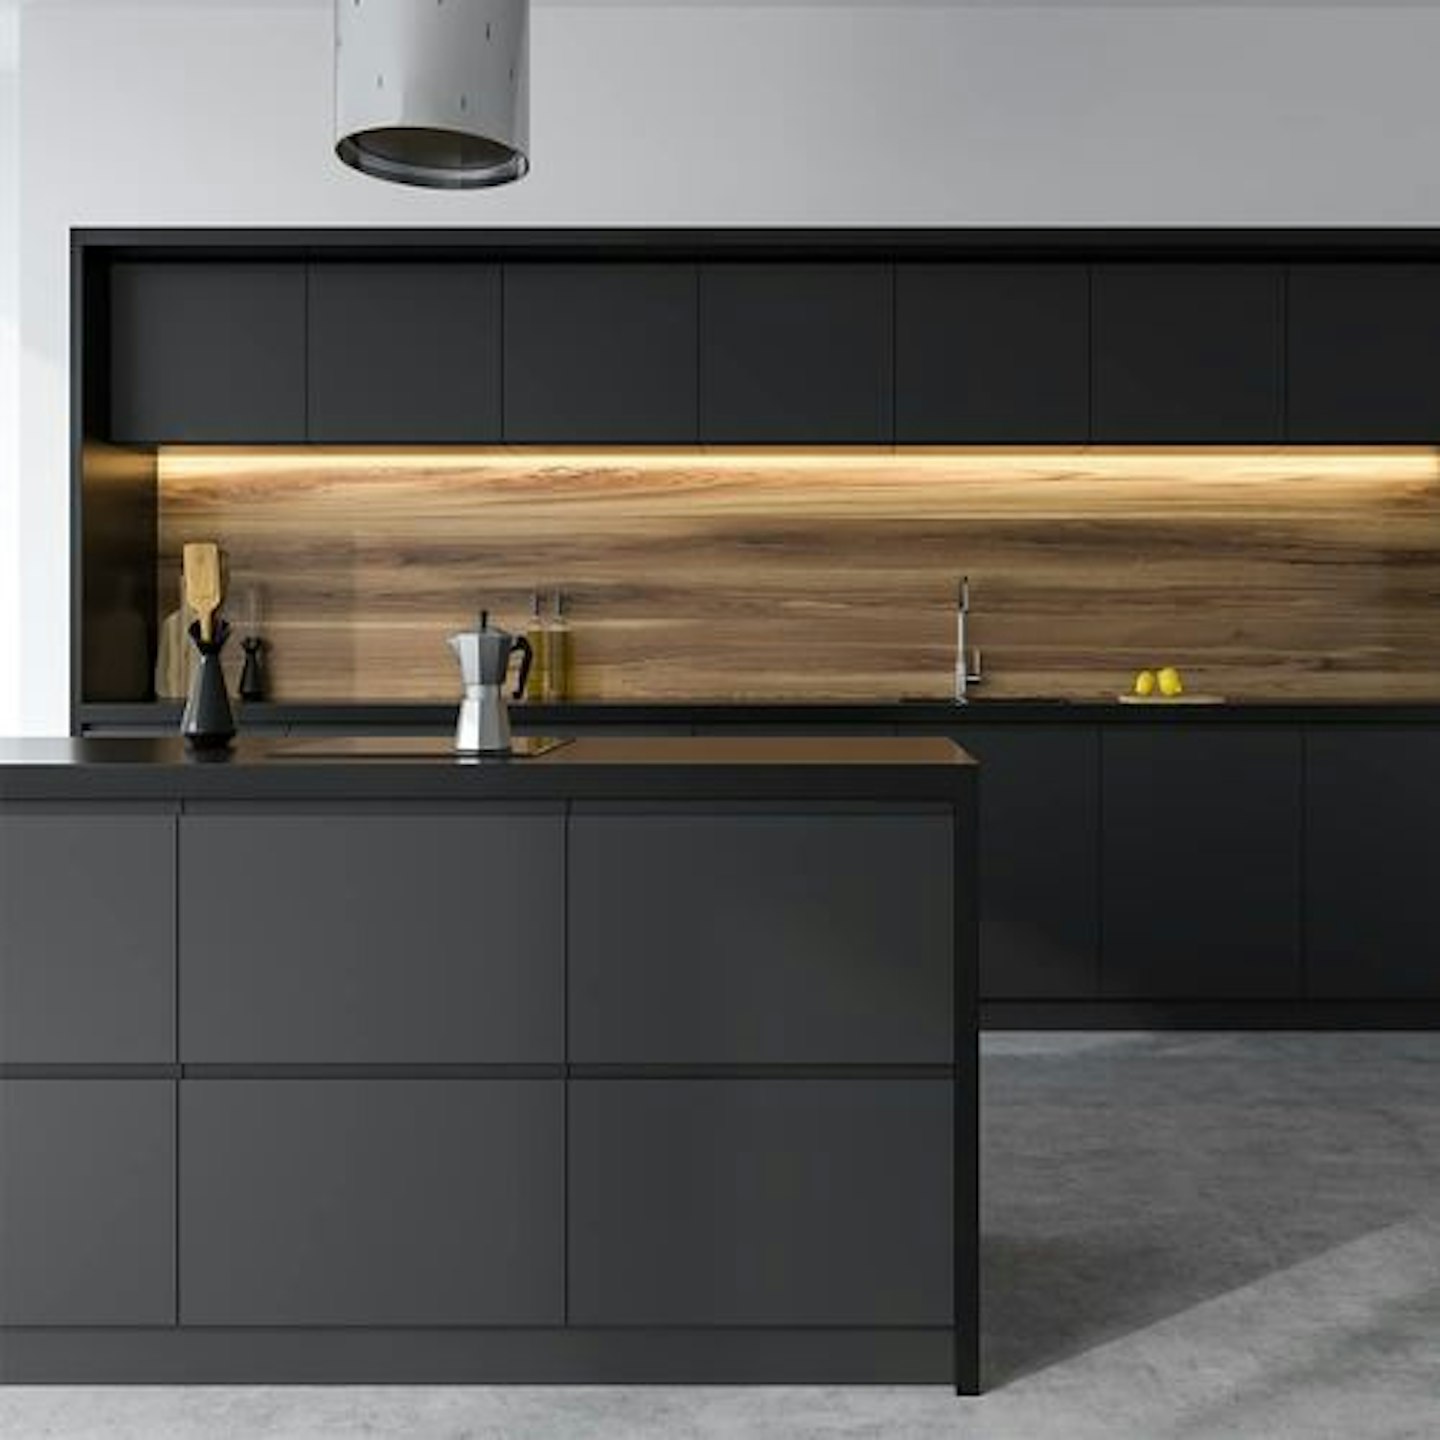 https://images.bauerhosting.com/affiliates/sites/10/2022/08/best-kitchen-vinyl-wrap-amazon-black-budget.jpg?auto=format&w=1440&q=80